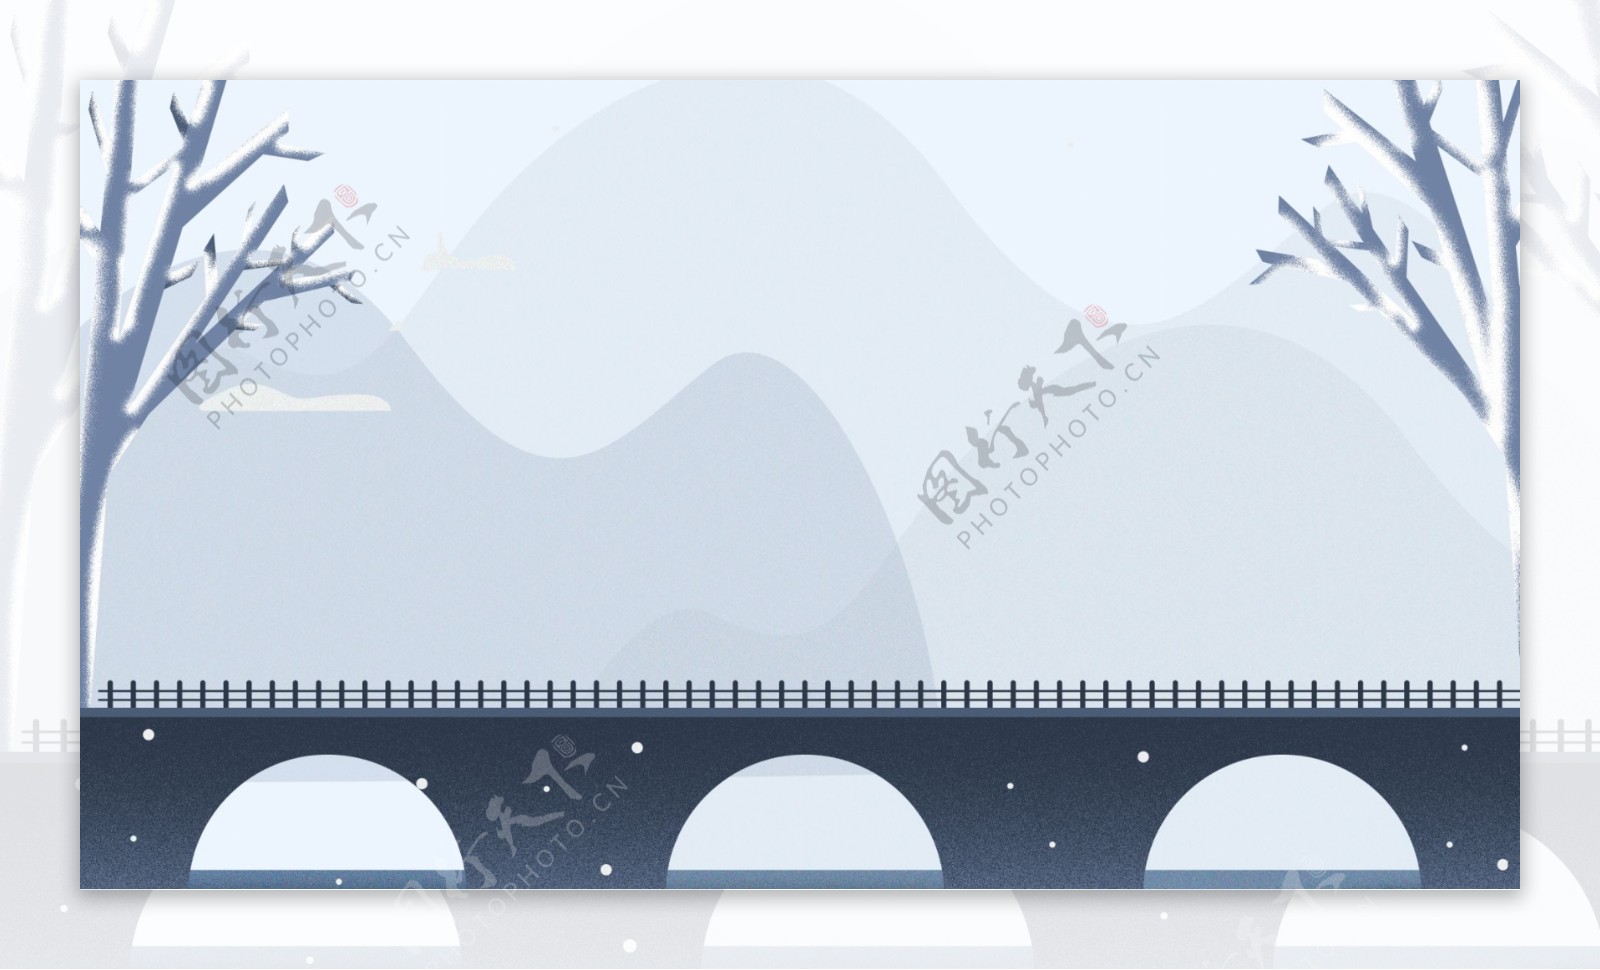 扁平化冬季小桥背景设计